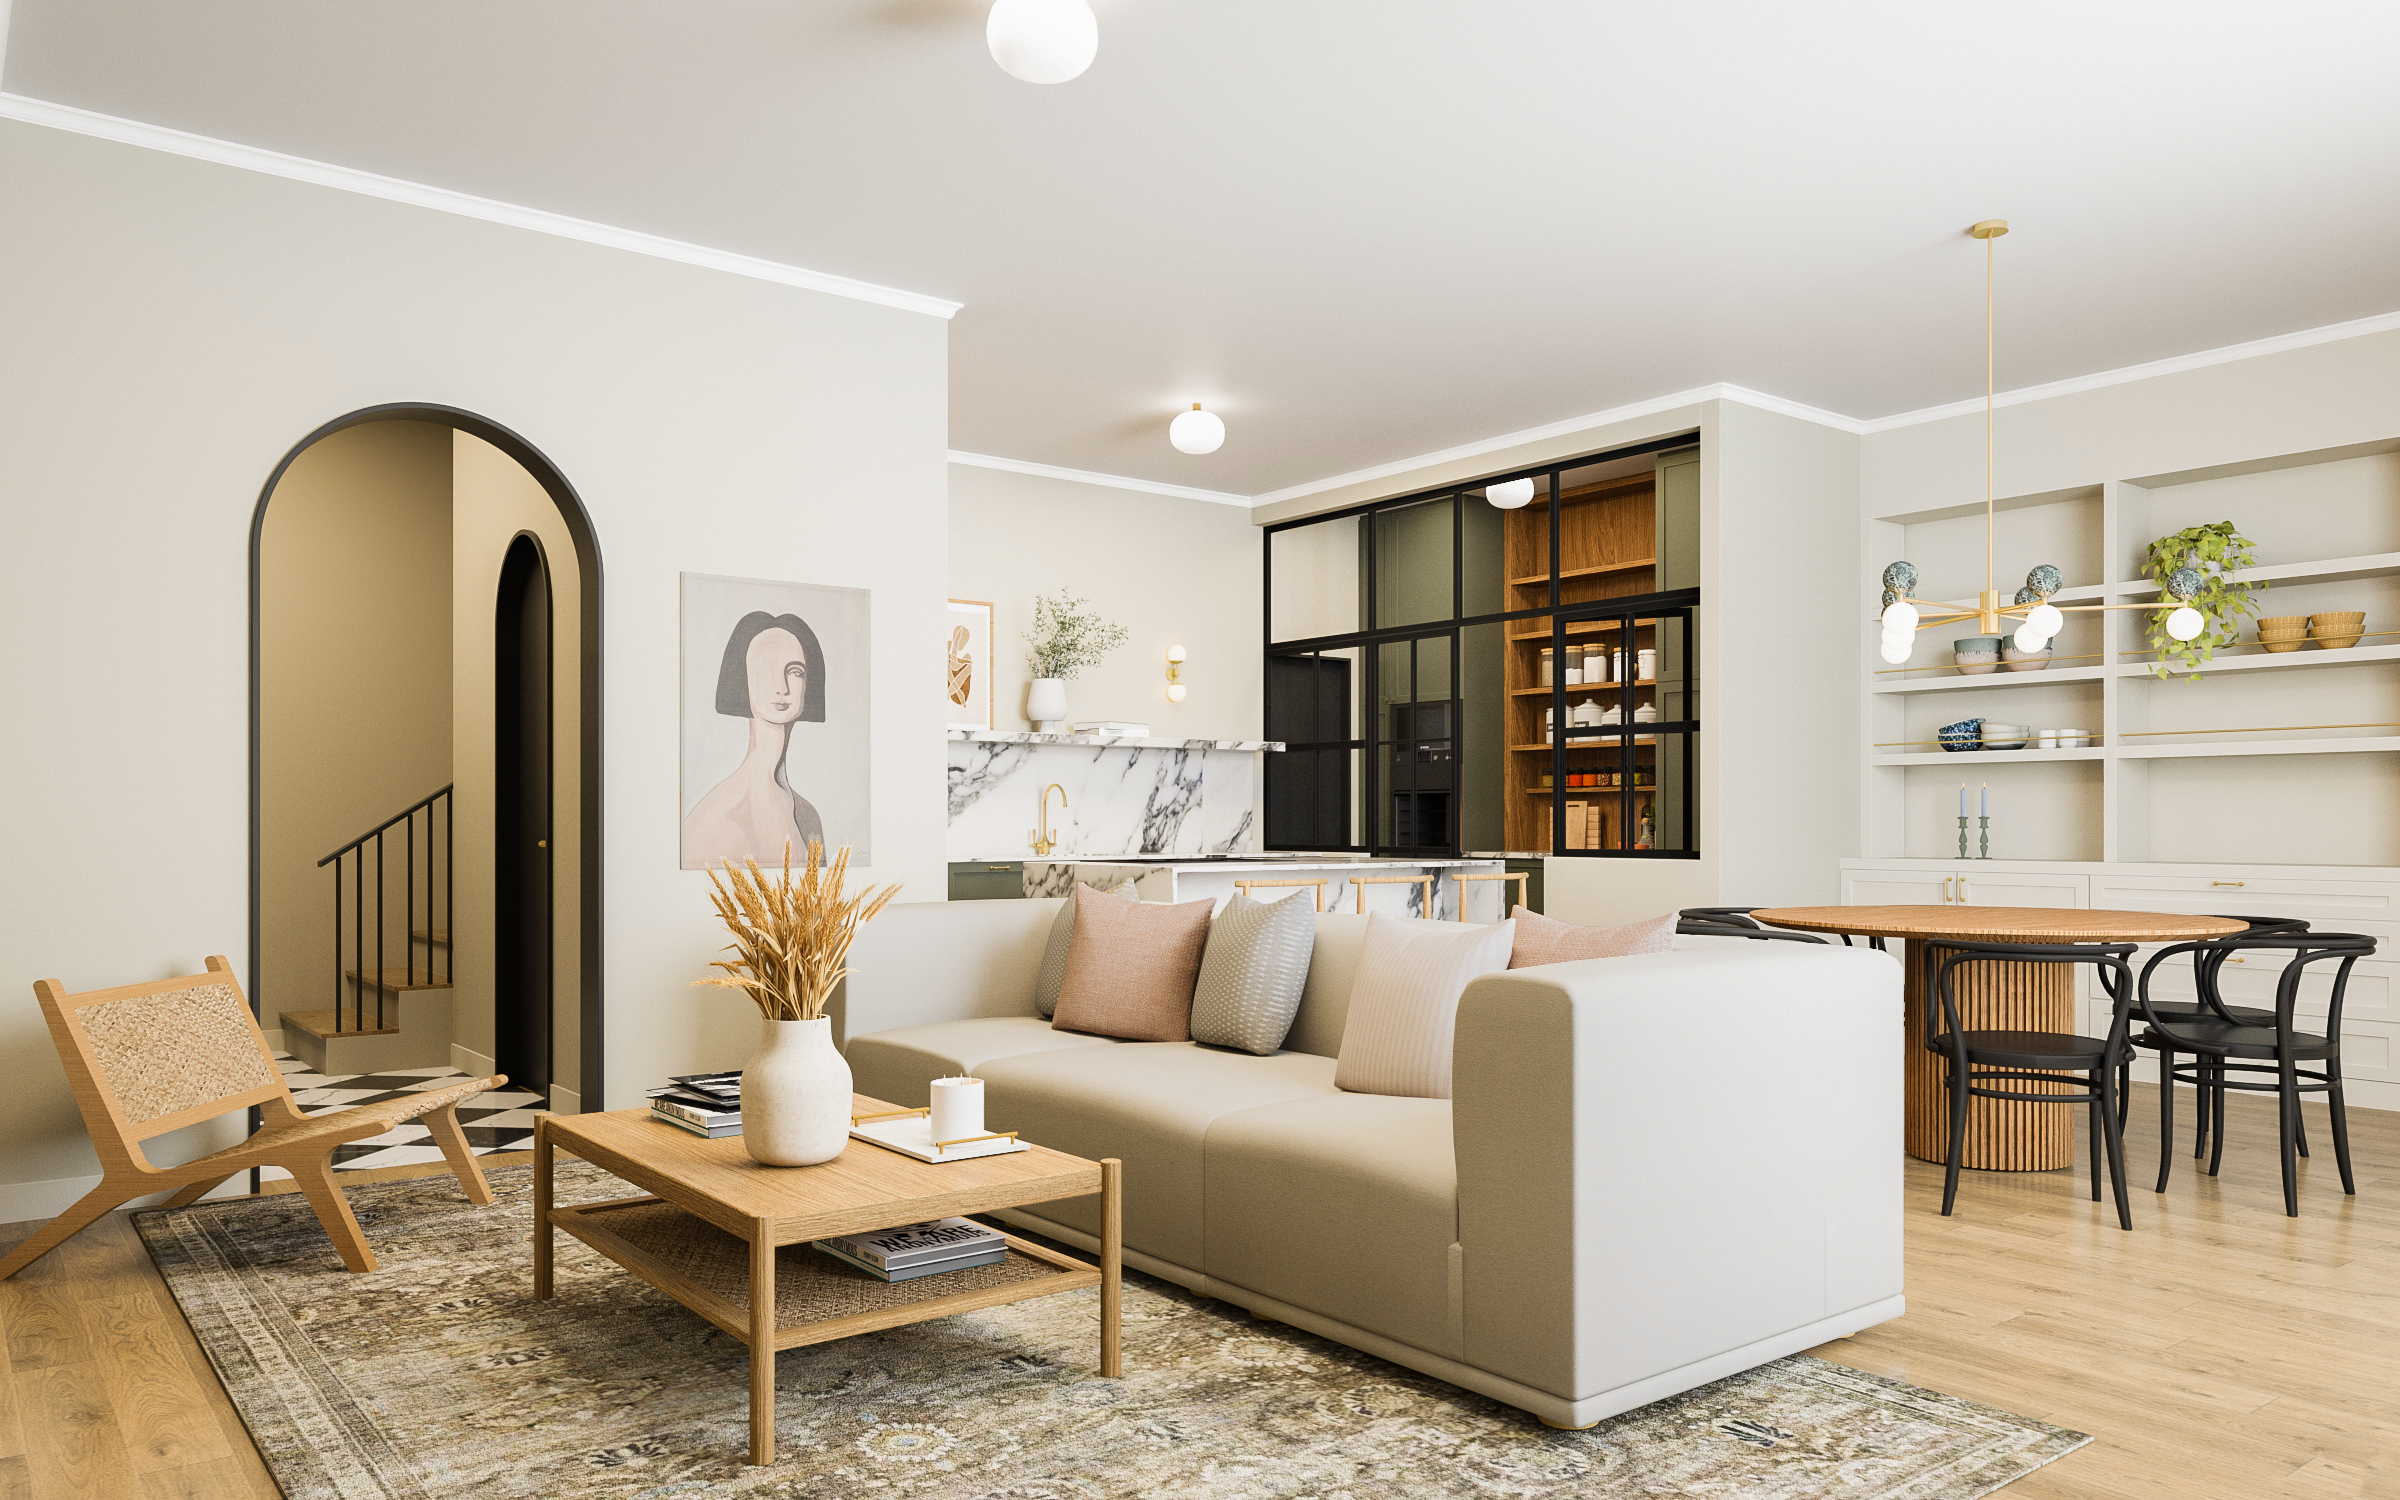 Remodelação e decoração de sala de estar moderna com tons brancos, rosas e verdes e cozinha open space